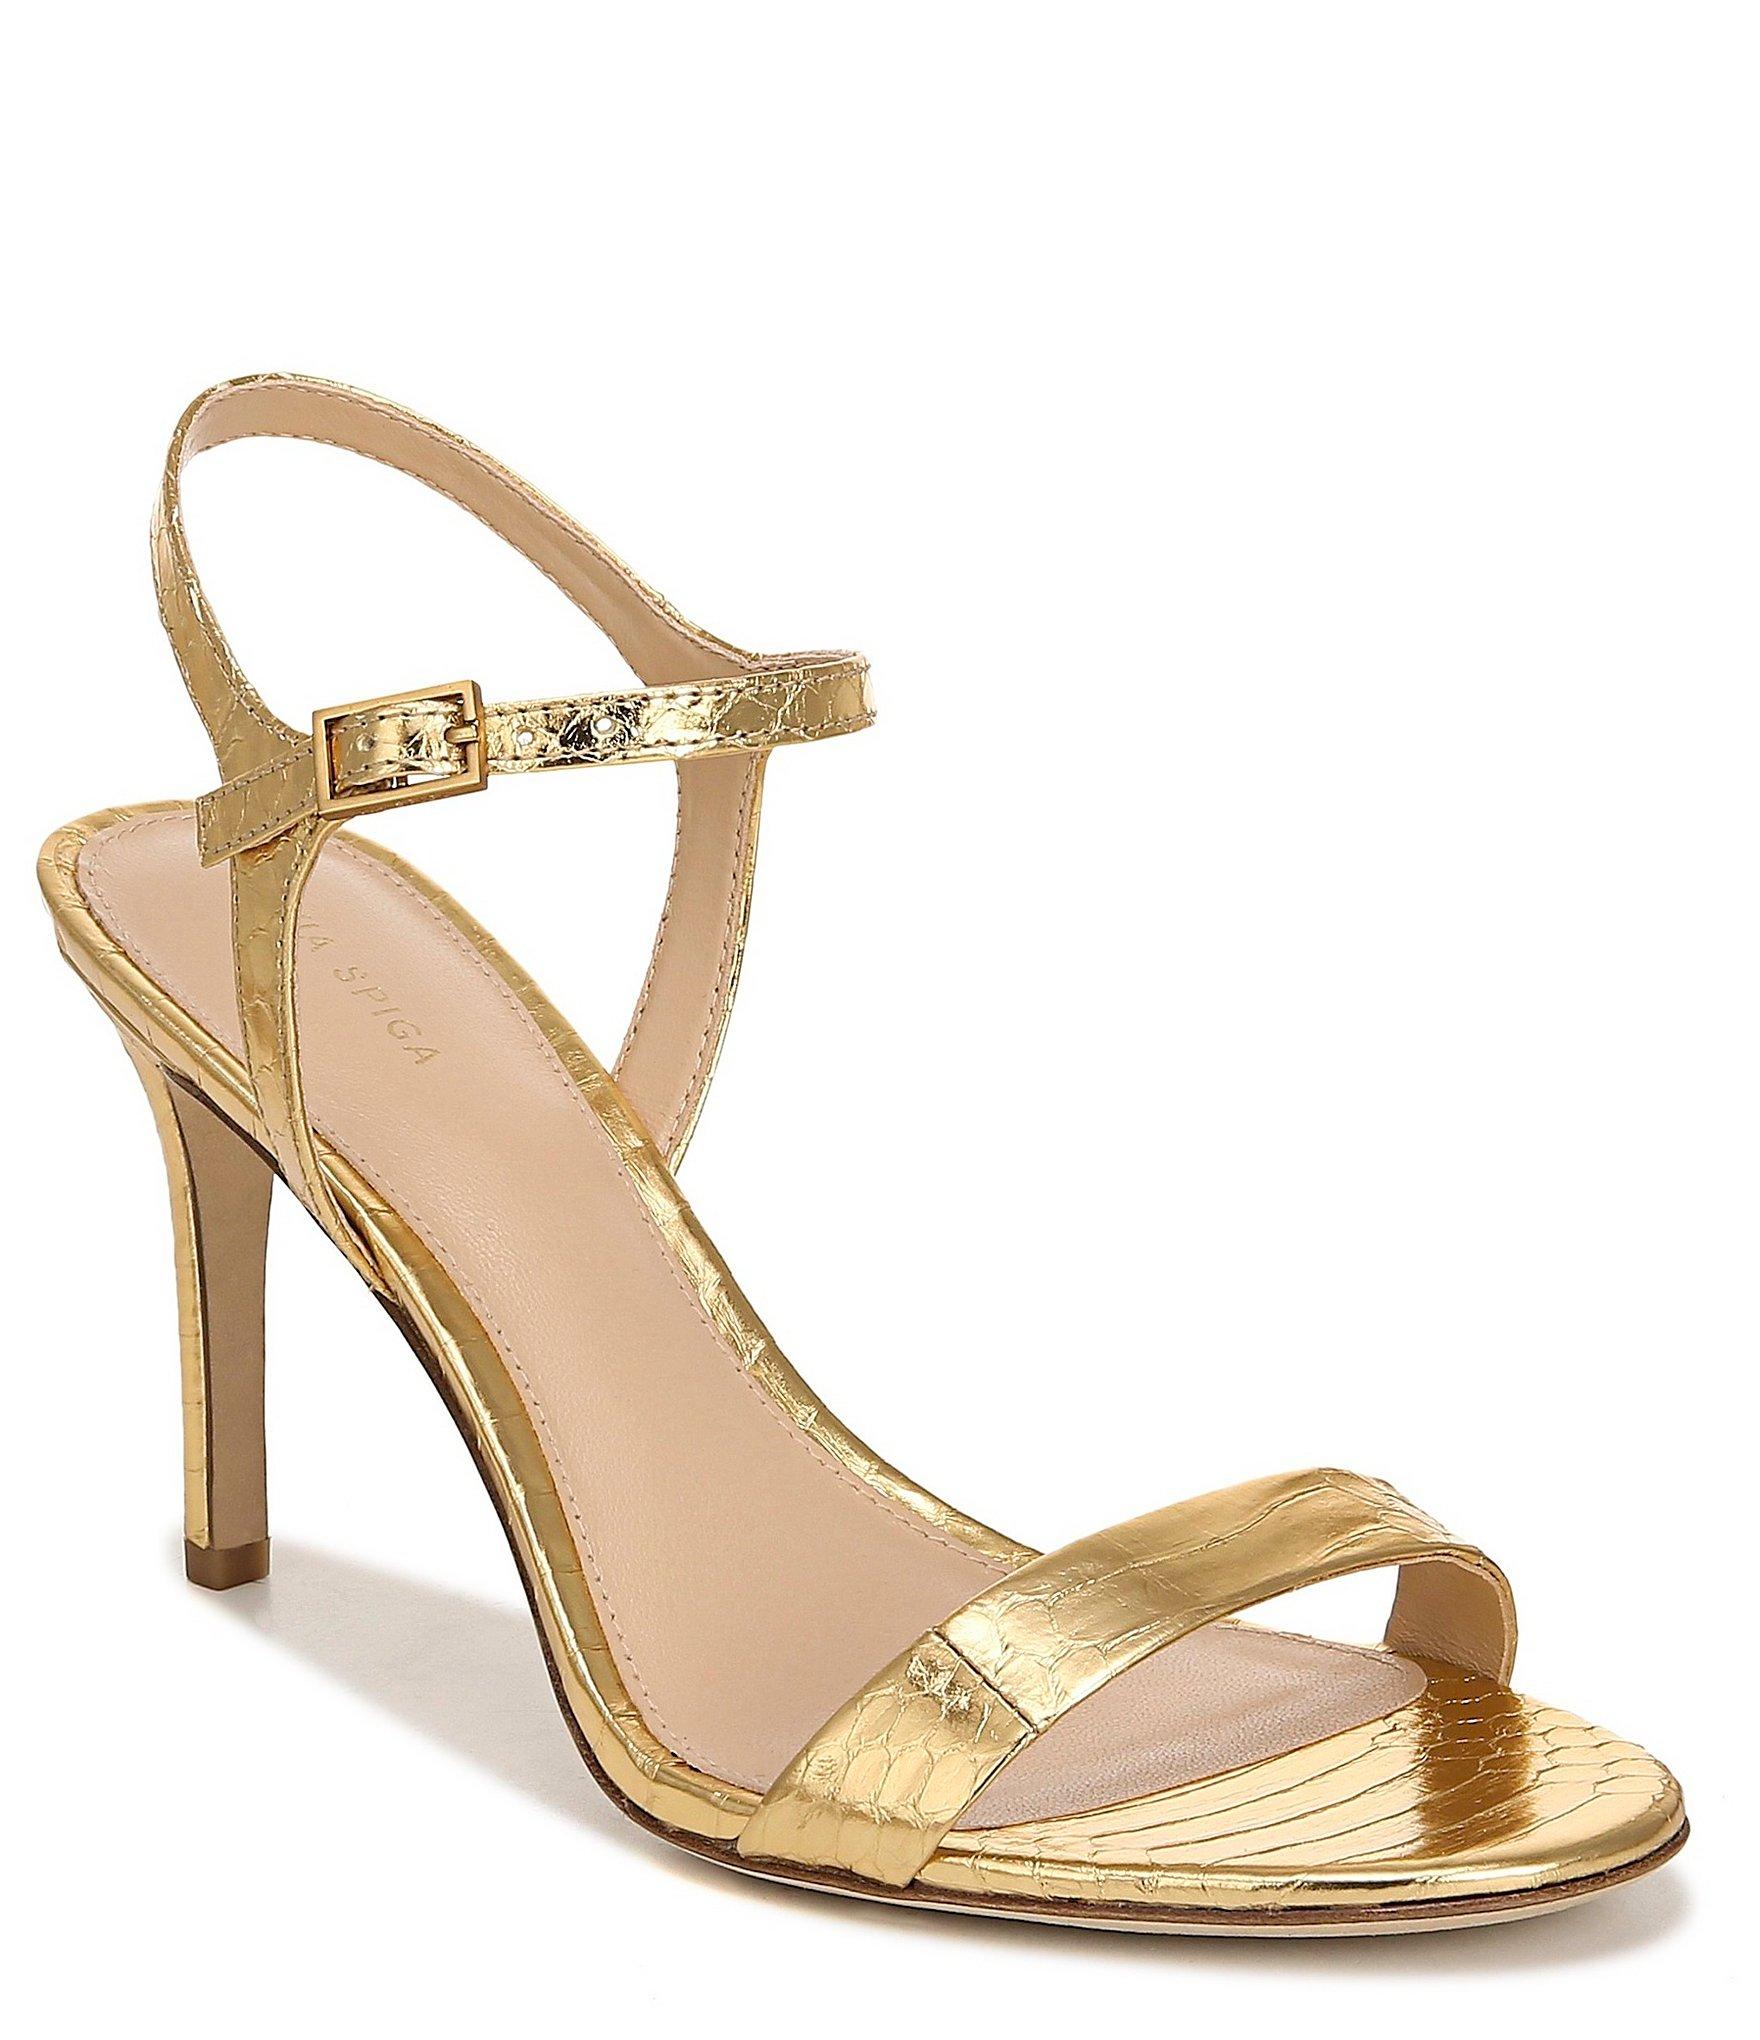 Via Spiga Leather Madeleine Sandals in Gold (Metallic) - Lyst